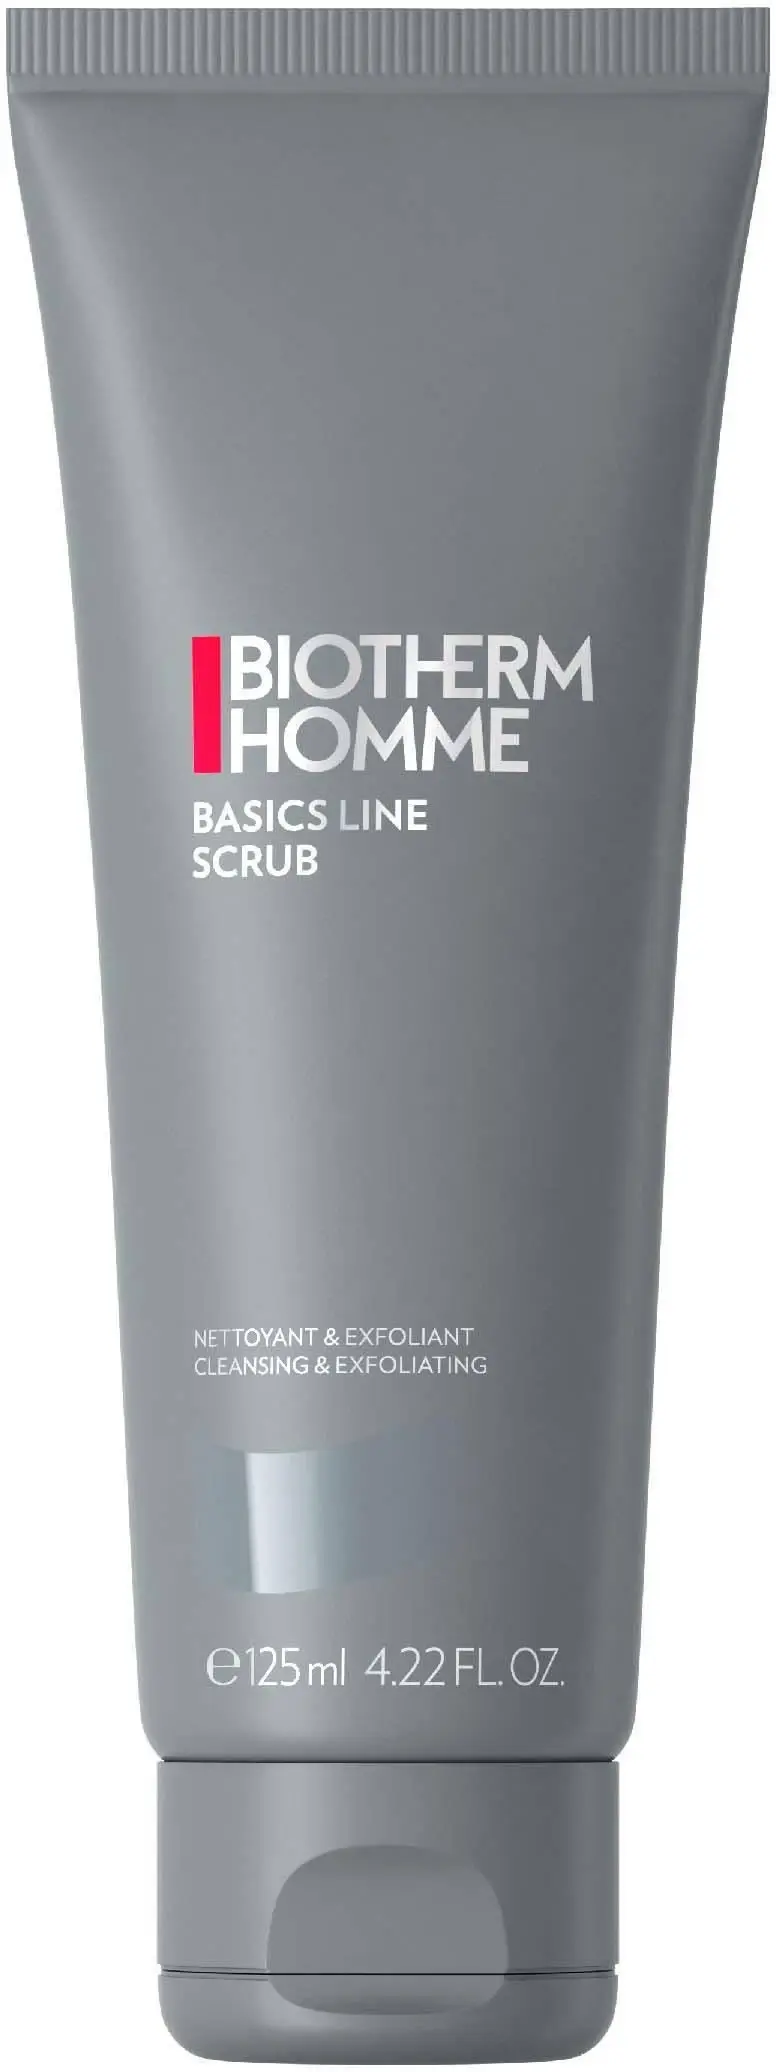 Biotherm Homme Basics Line Scrub (125 ml)